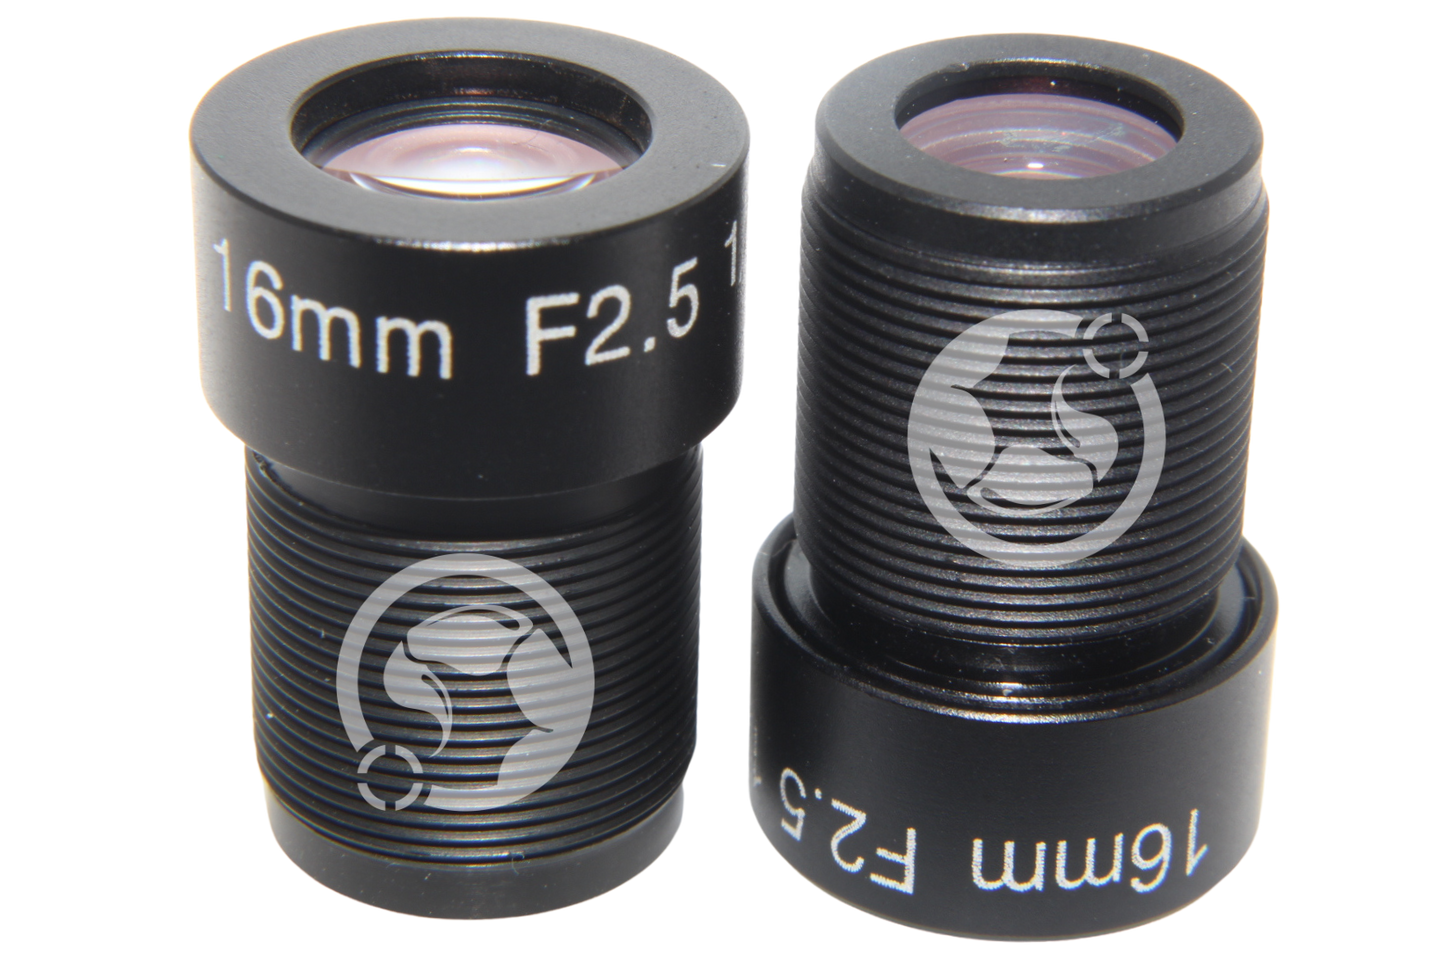 M12 Lens 16mm F2.5